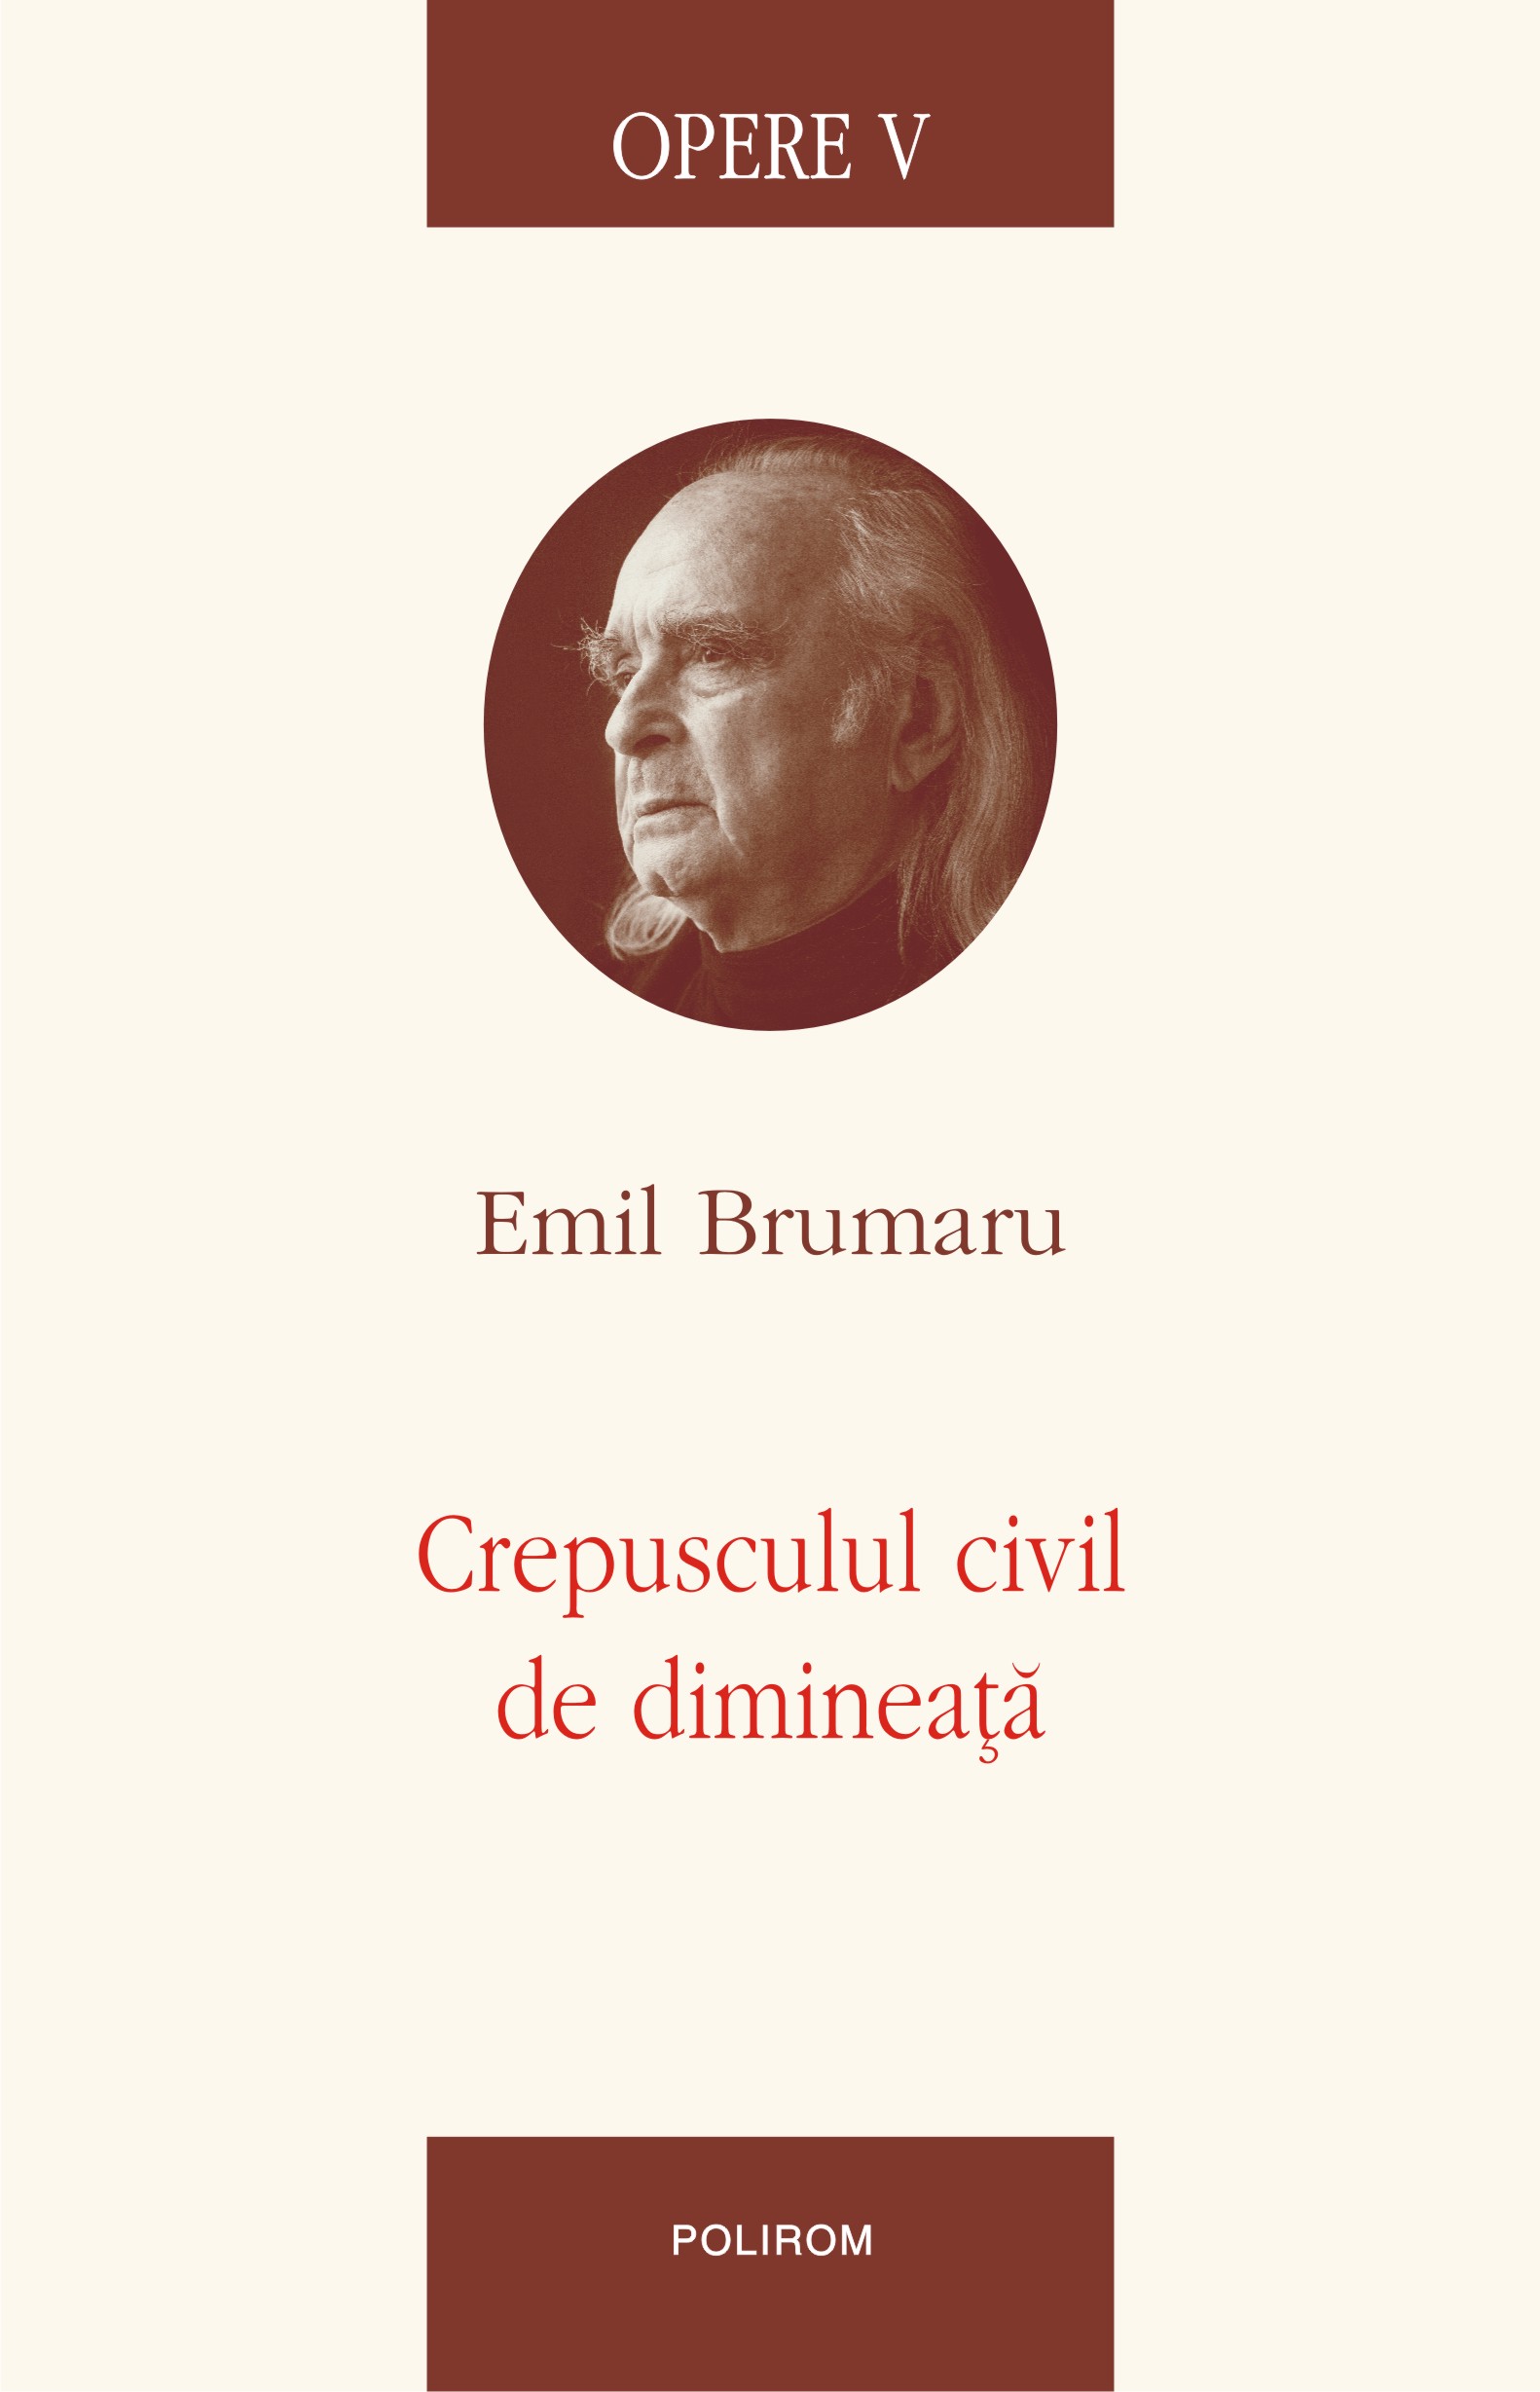 eBook Opere V. Crepusculul civil de dimineata - Emil Brumaru